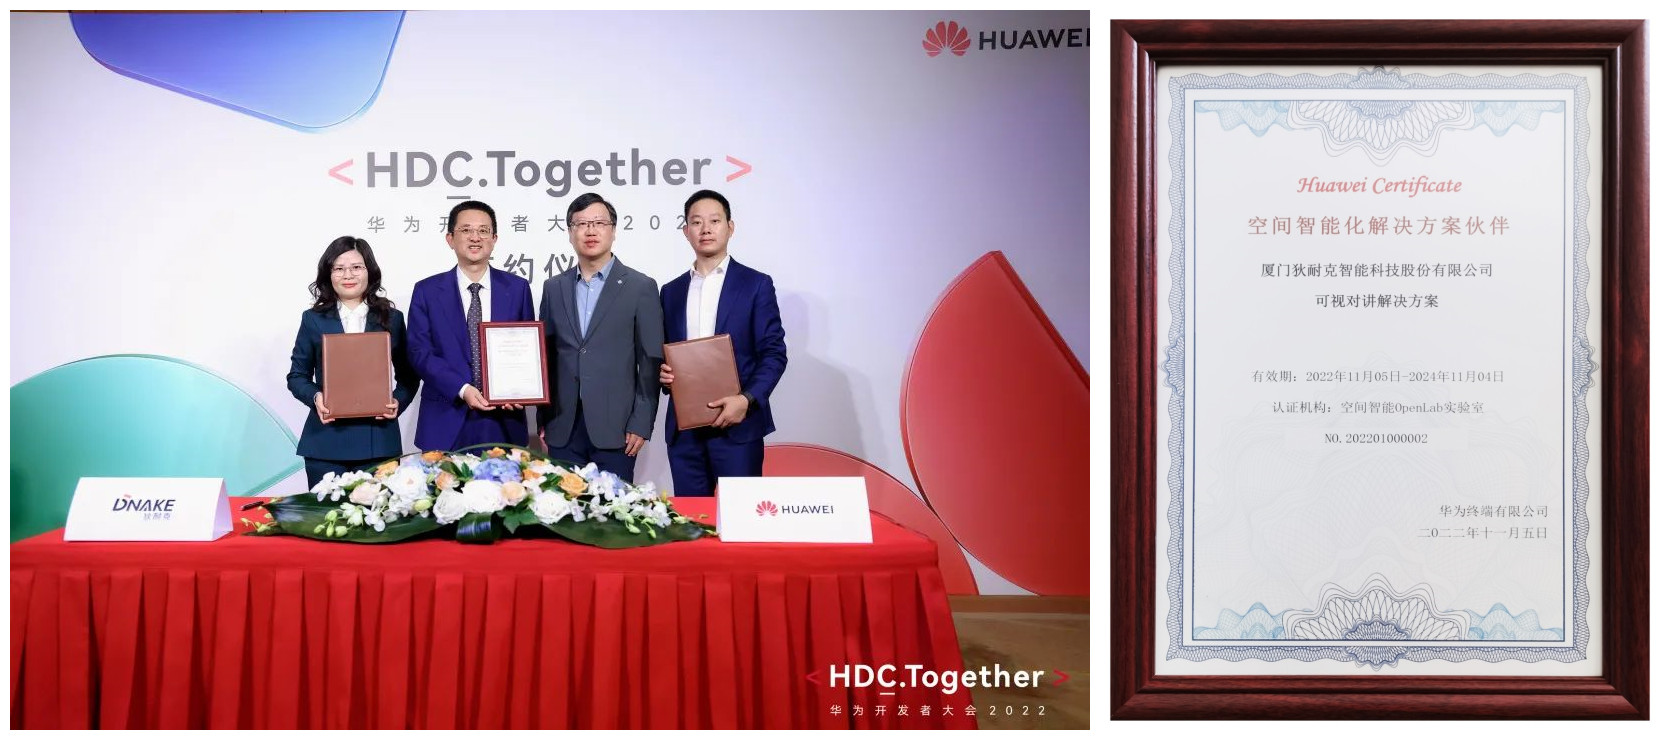 Huawei Certificate